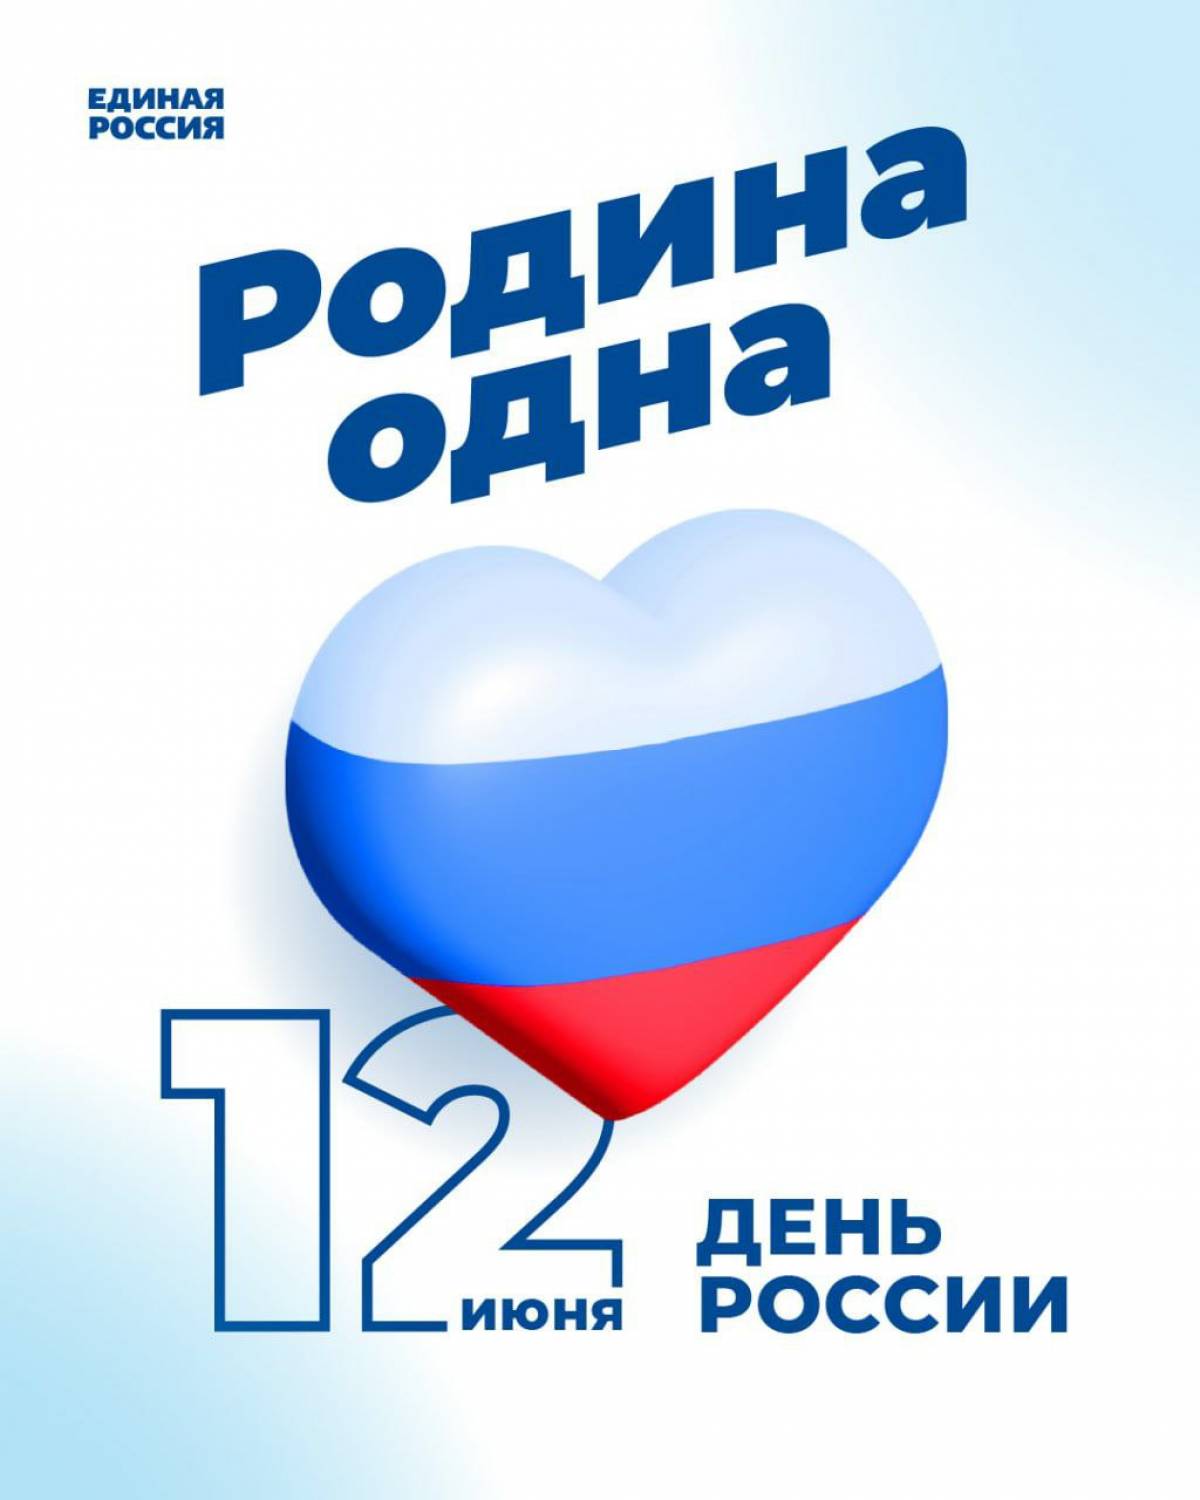 12 Июня день России символика